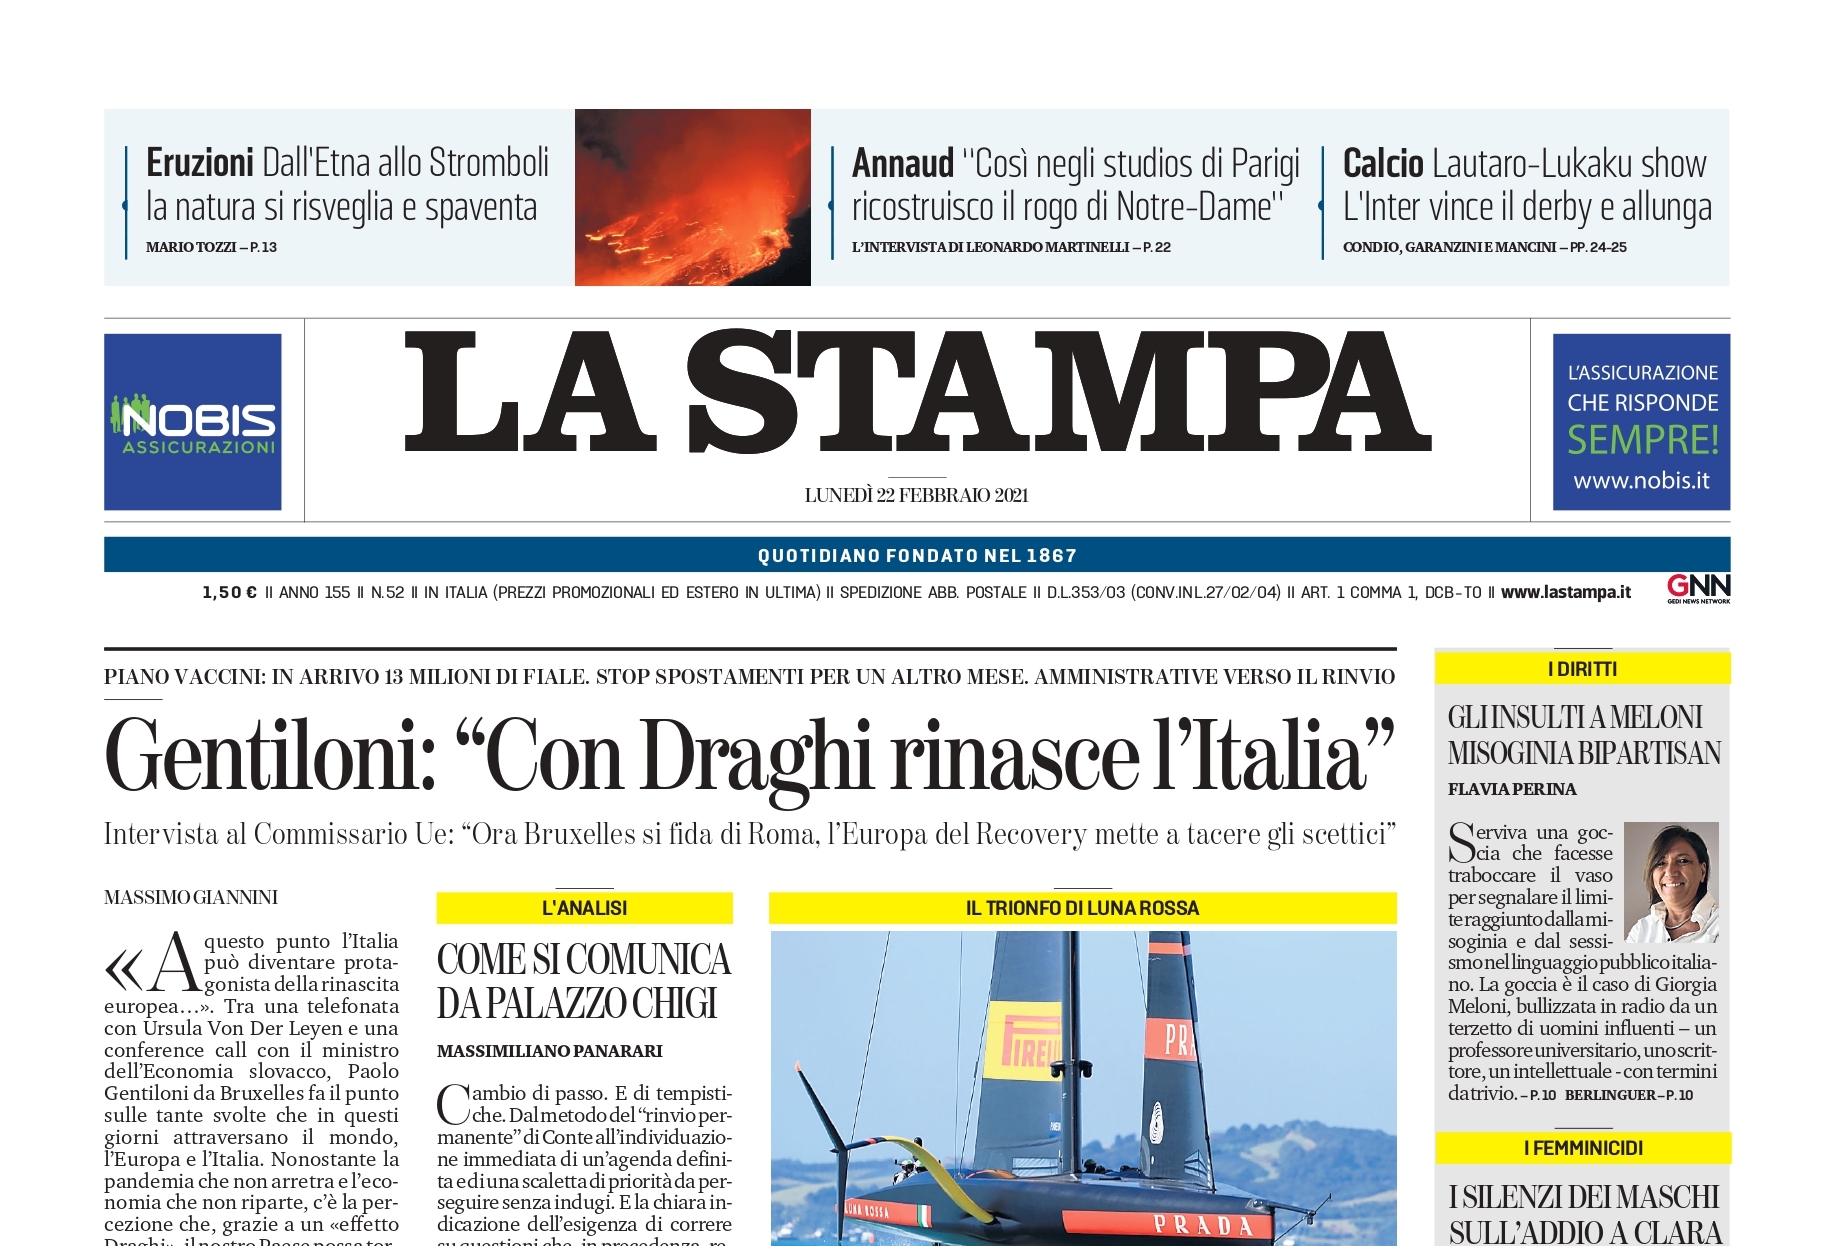 Gentiloni: “Con Draghi rinasce l’Italia”